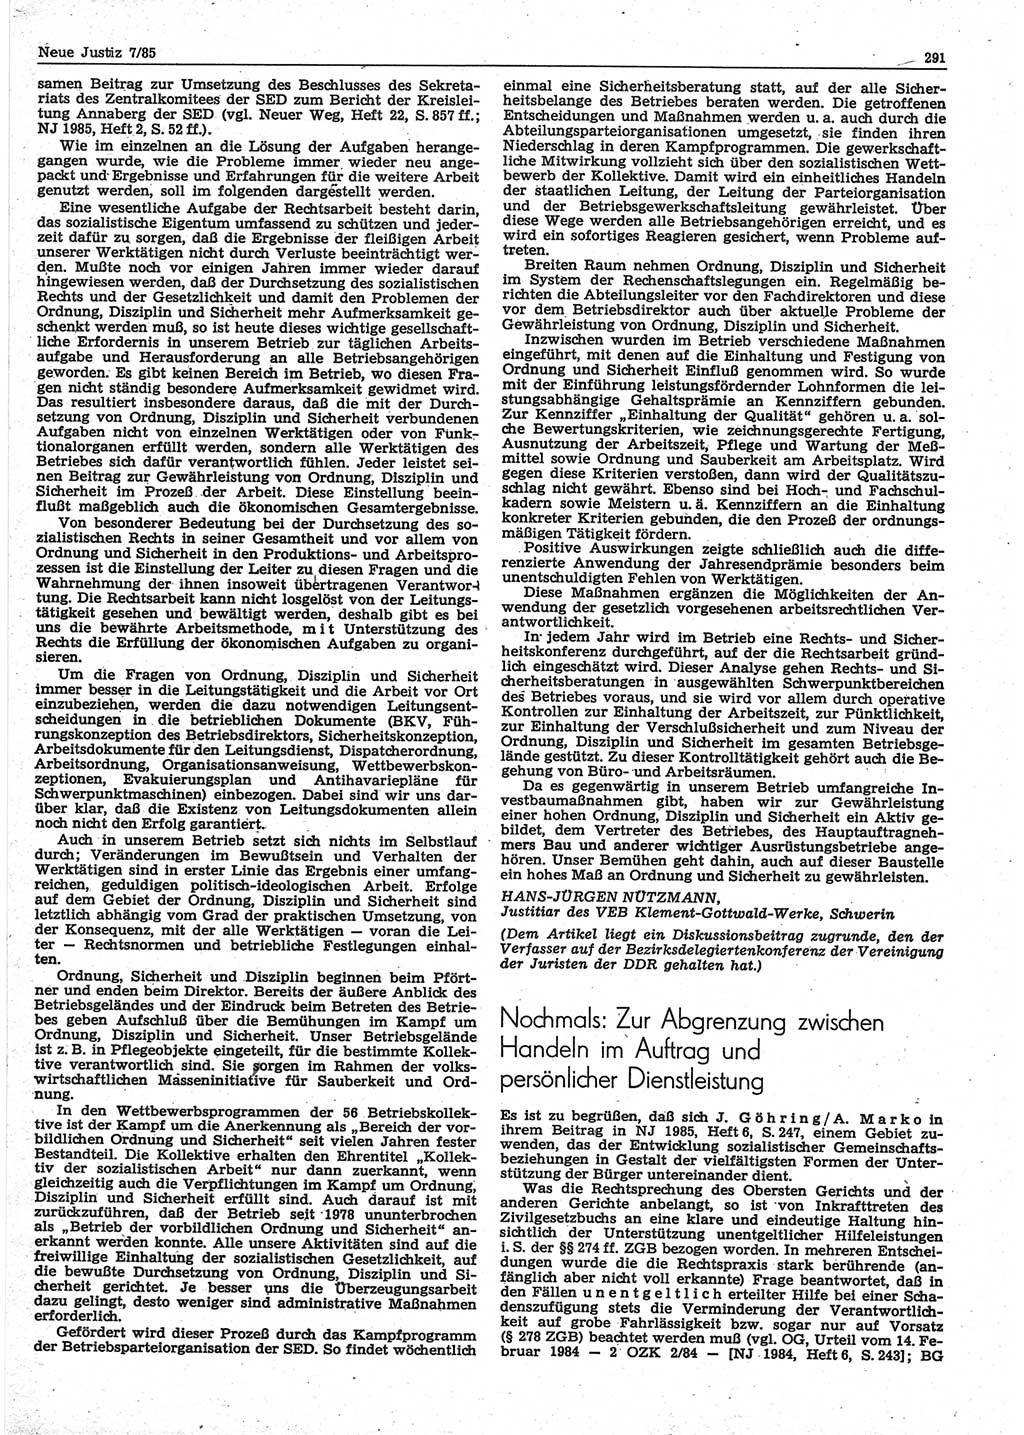 Neue Justiz (NJ), Zeitschrift für sozialistisches Recht und Gesetzlichkeit [Deutsche Demokratische Republik (DDR)], 39. Jahrgang 1985, Seite 291 (NJ DDR 1985, S. 291)